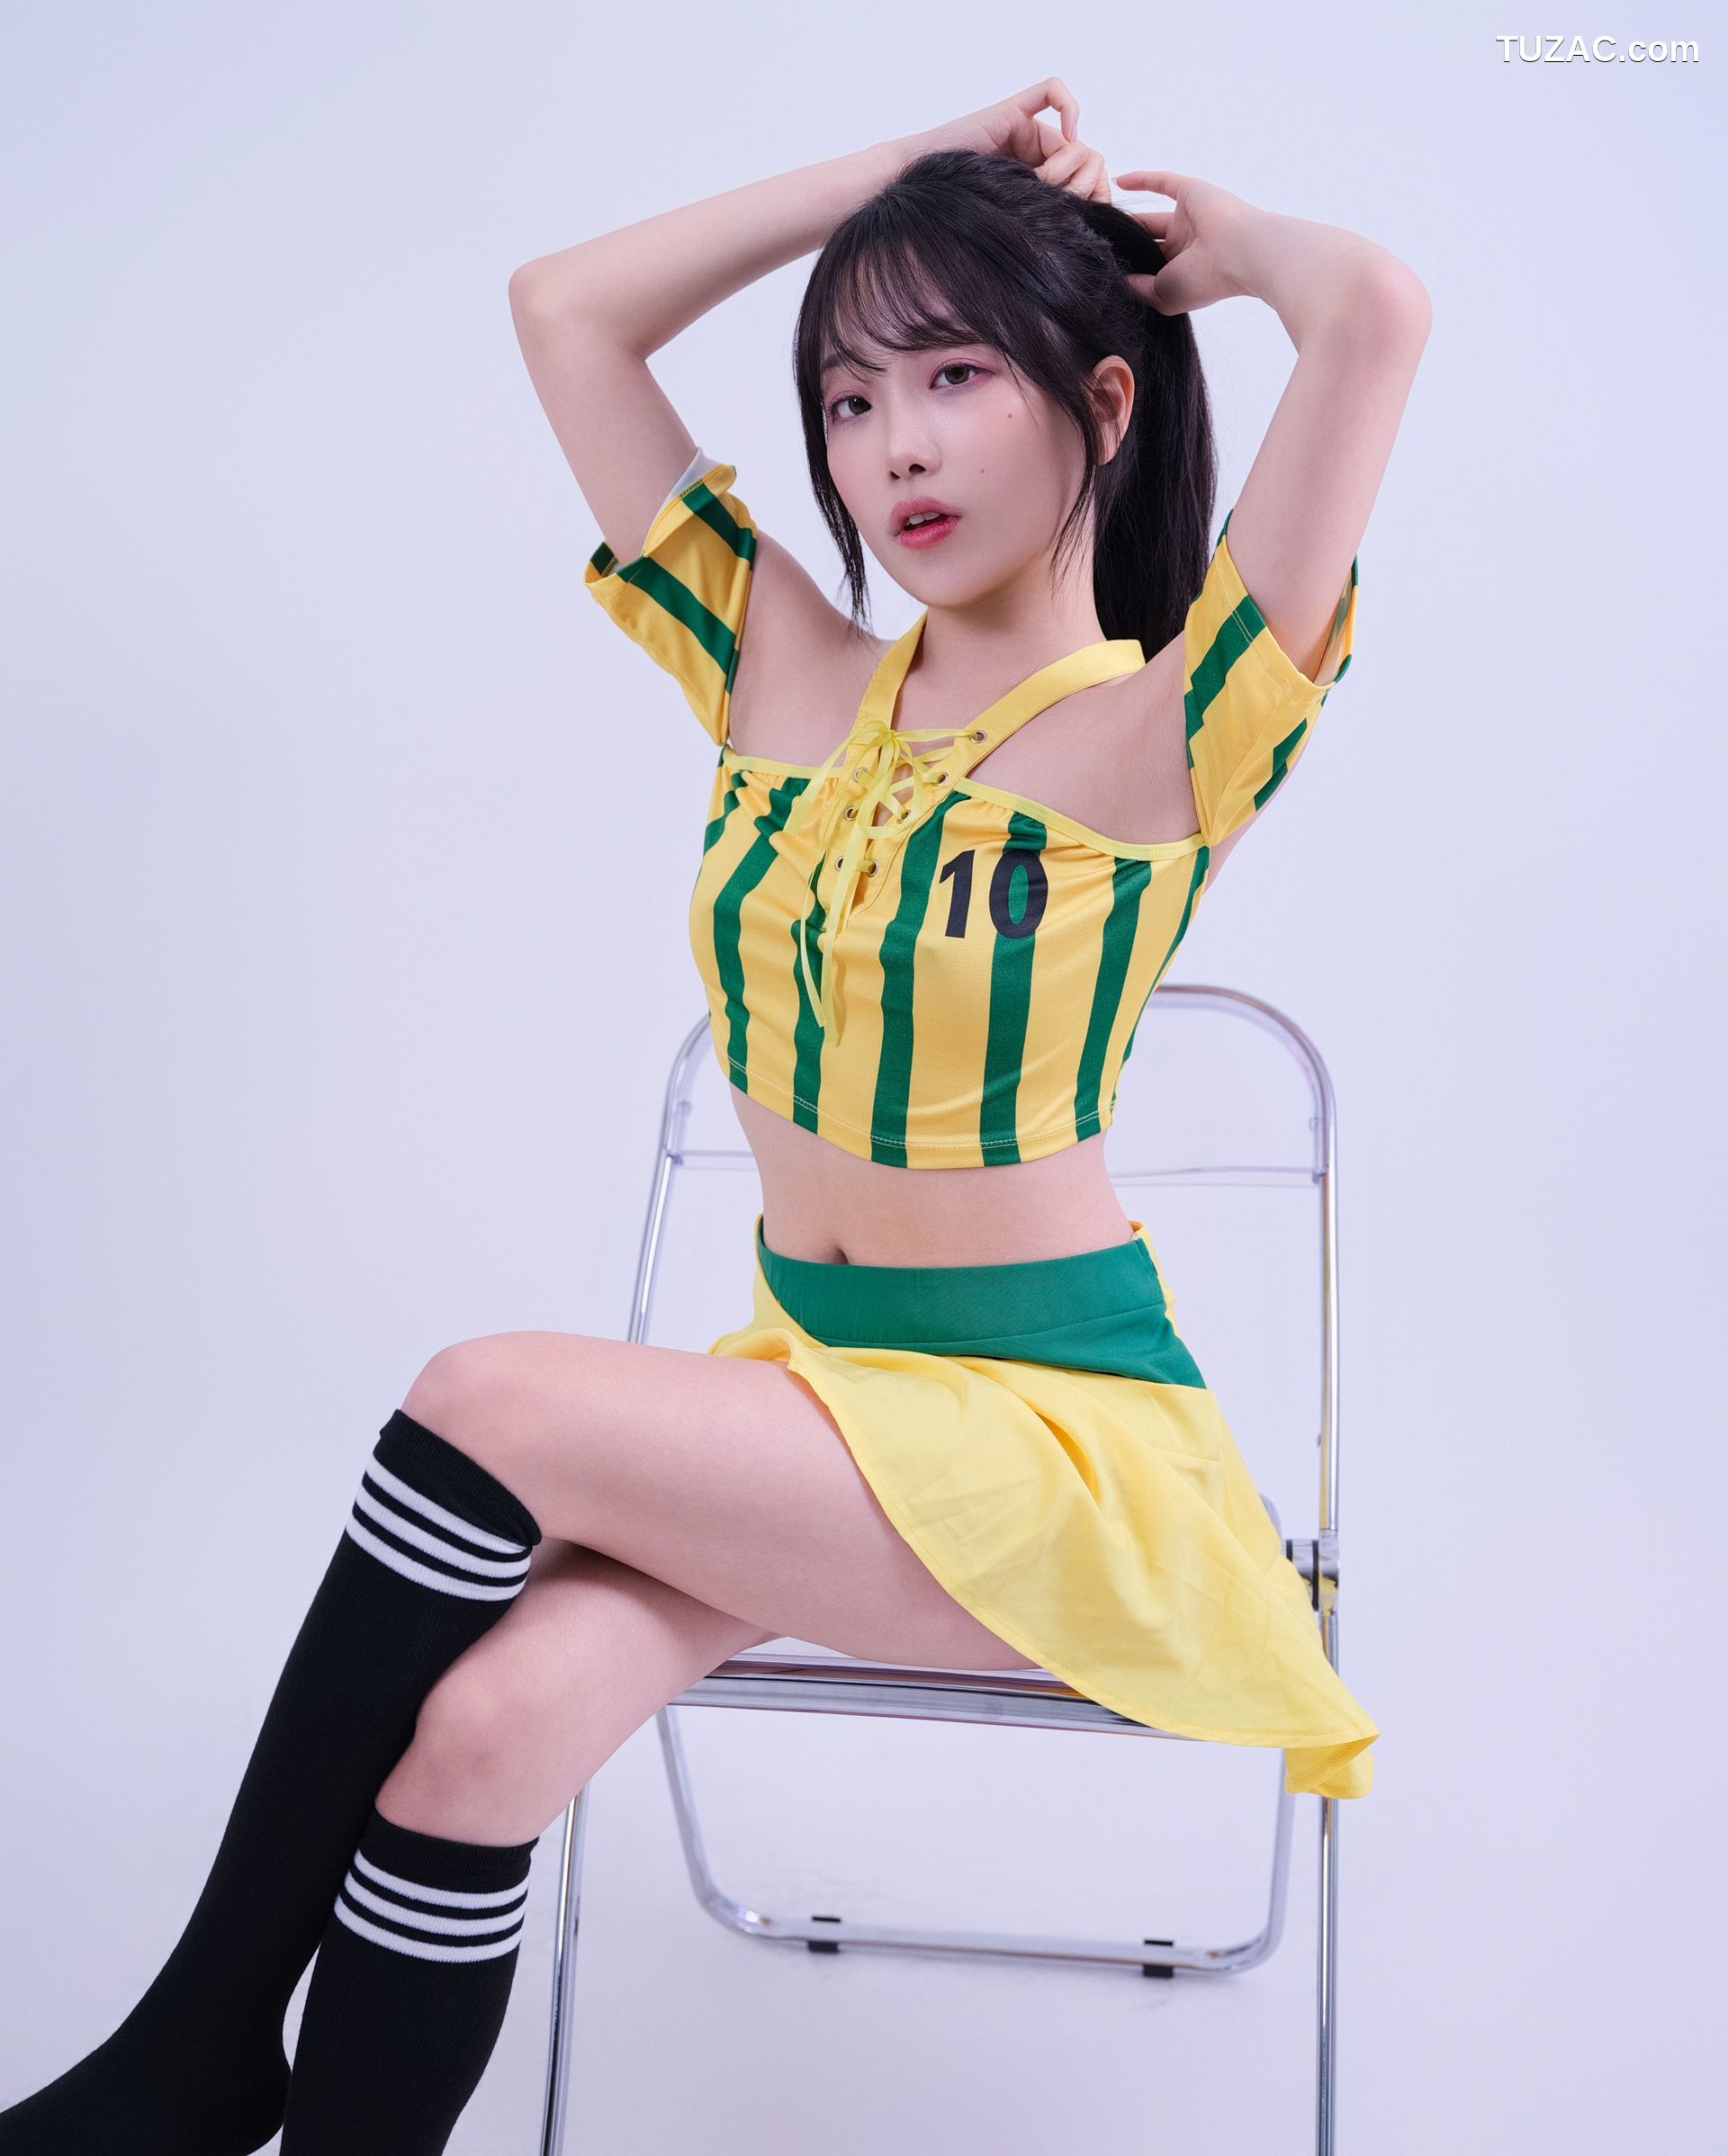 韩国美女-BAEKSULTANG-足球宝贝-Football-fan-GlamARchive